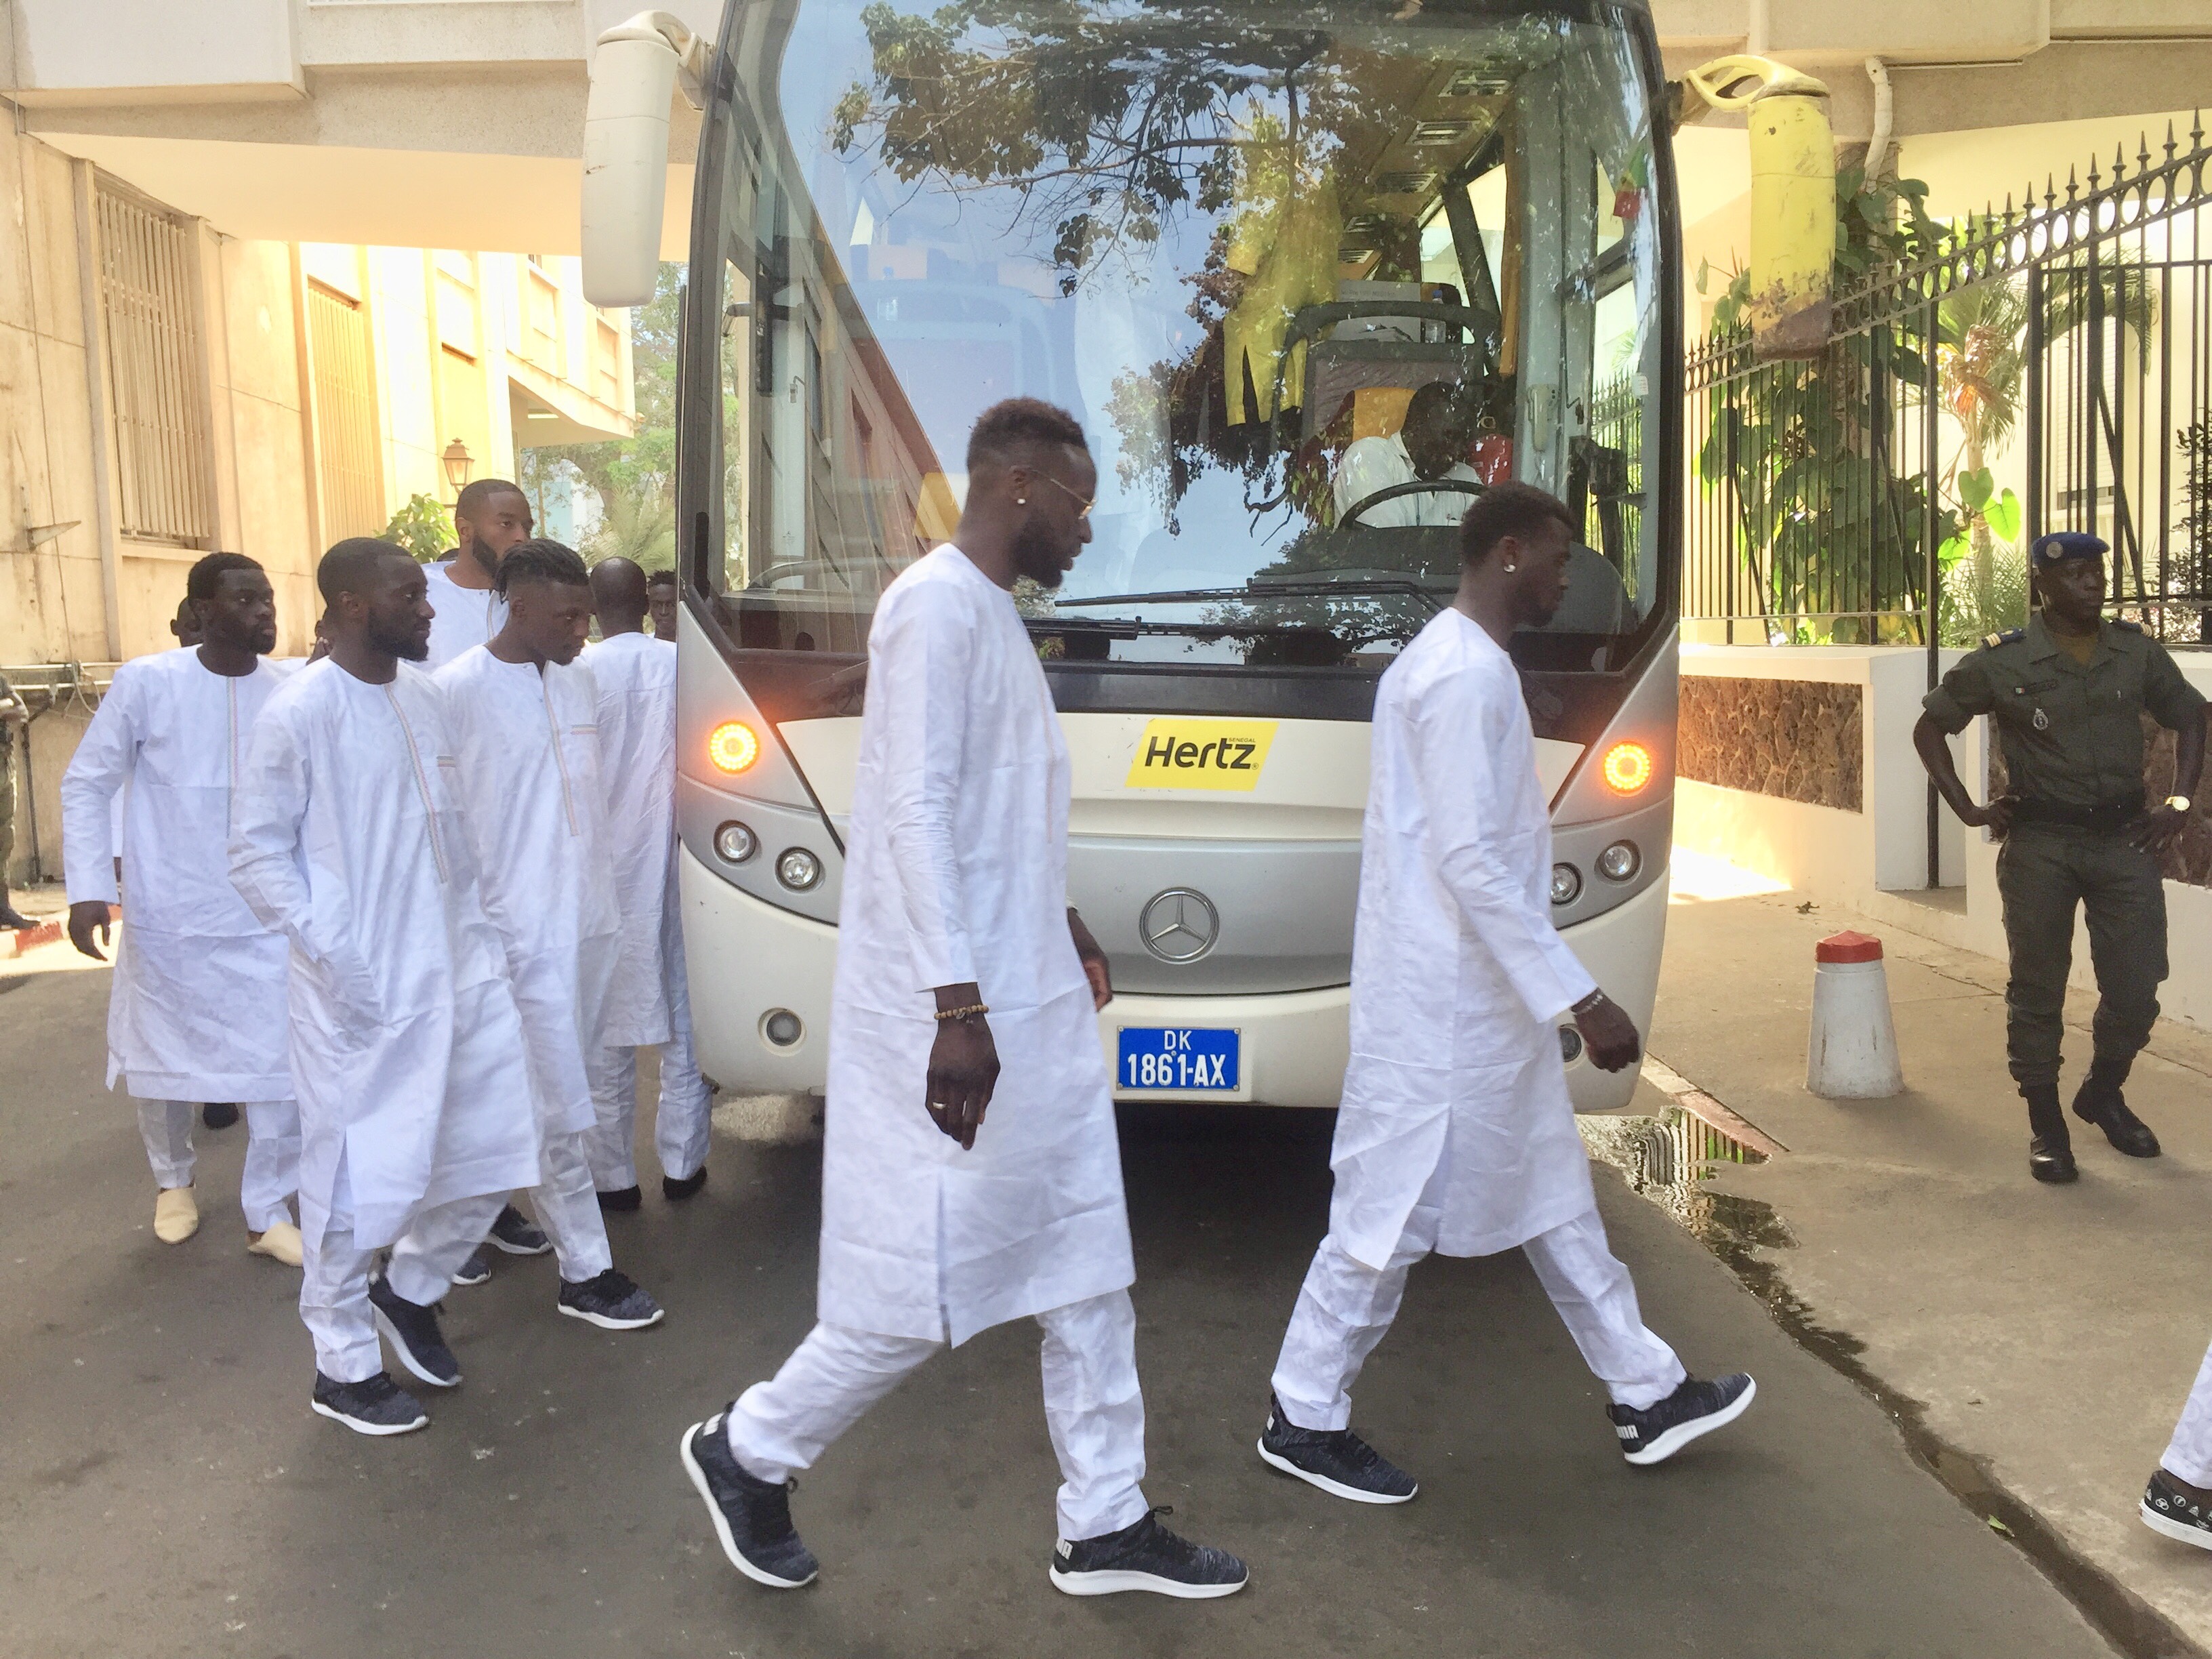 Remise du drapeau : Les Lions sont arrivés au palais de la République, en boubou "Obasanjo" et brodés aux couleurs nationales